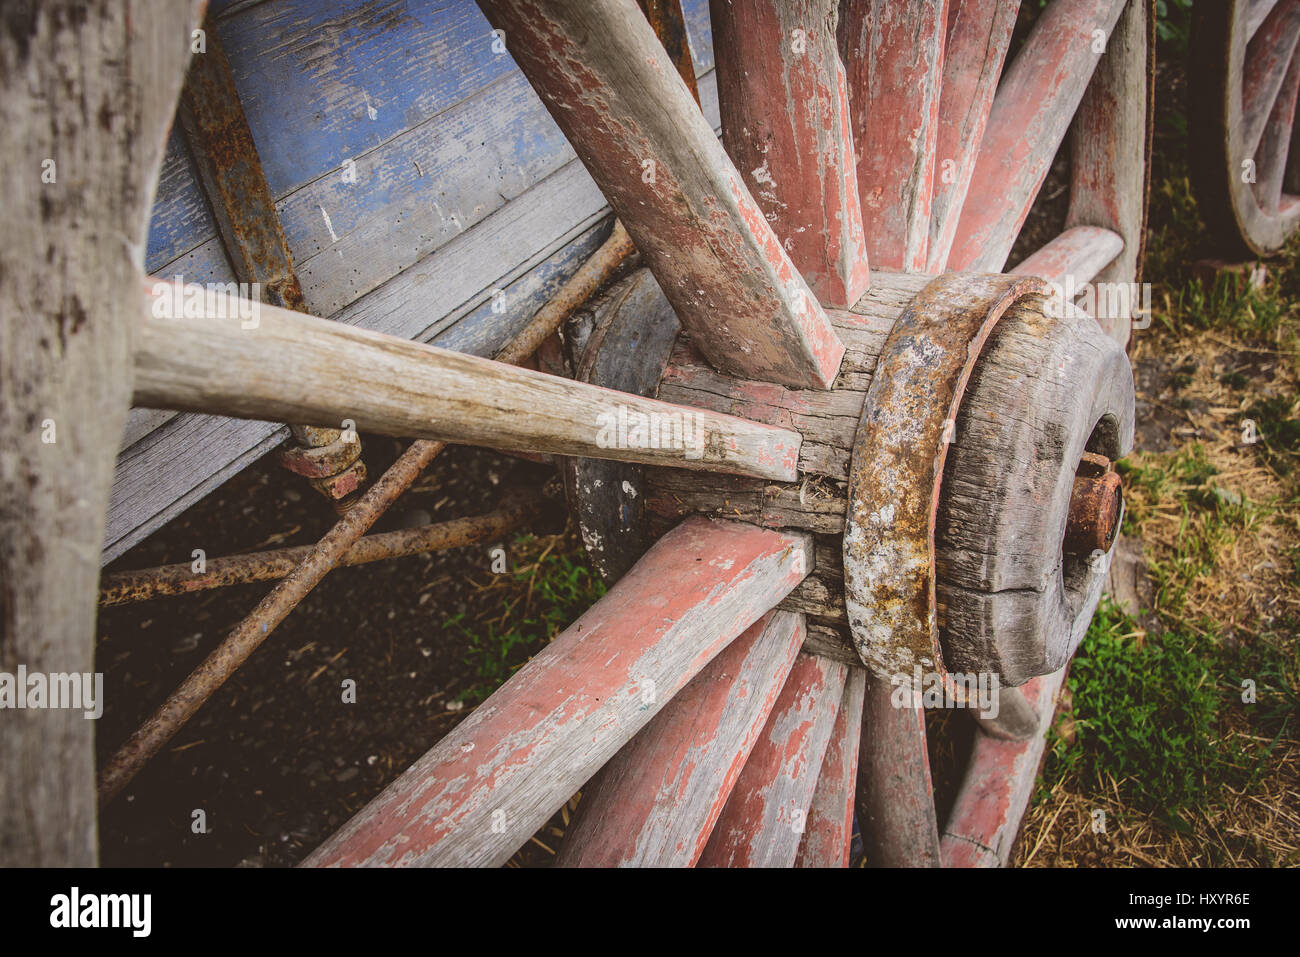 Rustic old wagon wheel Stock Photo